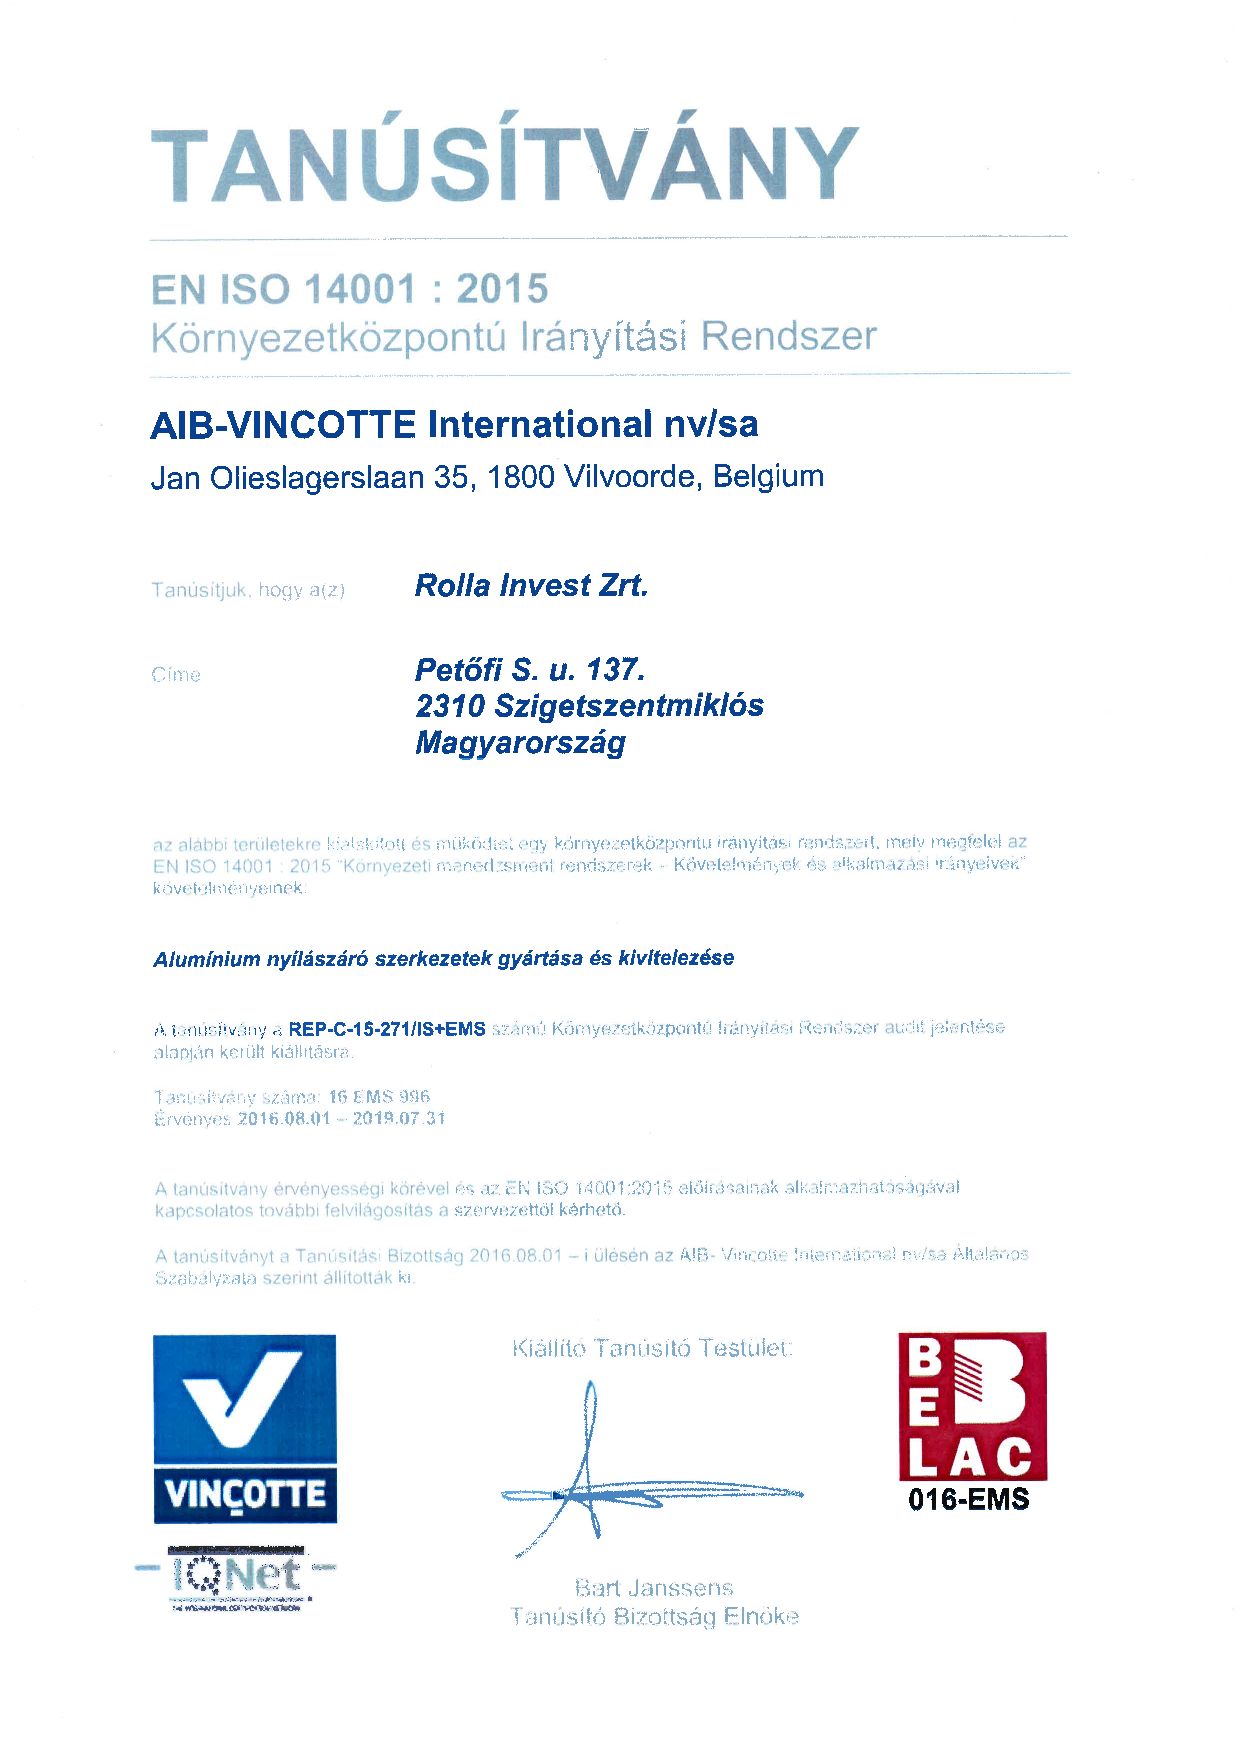 EN ISO 14001:2015 (0. oldal)